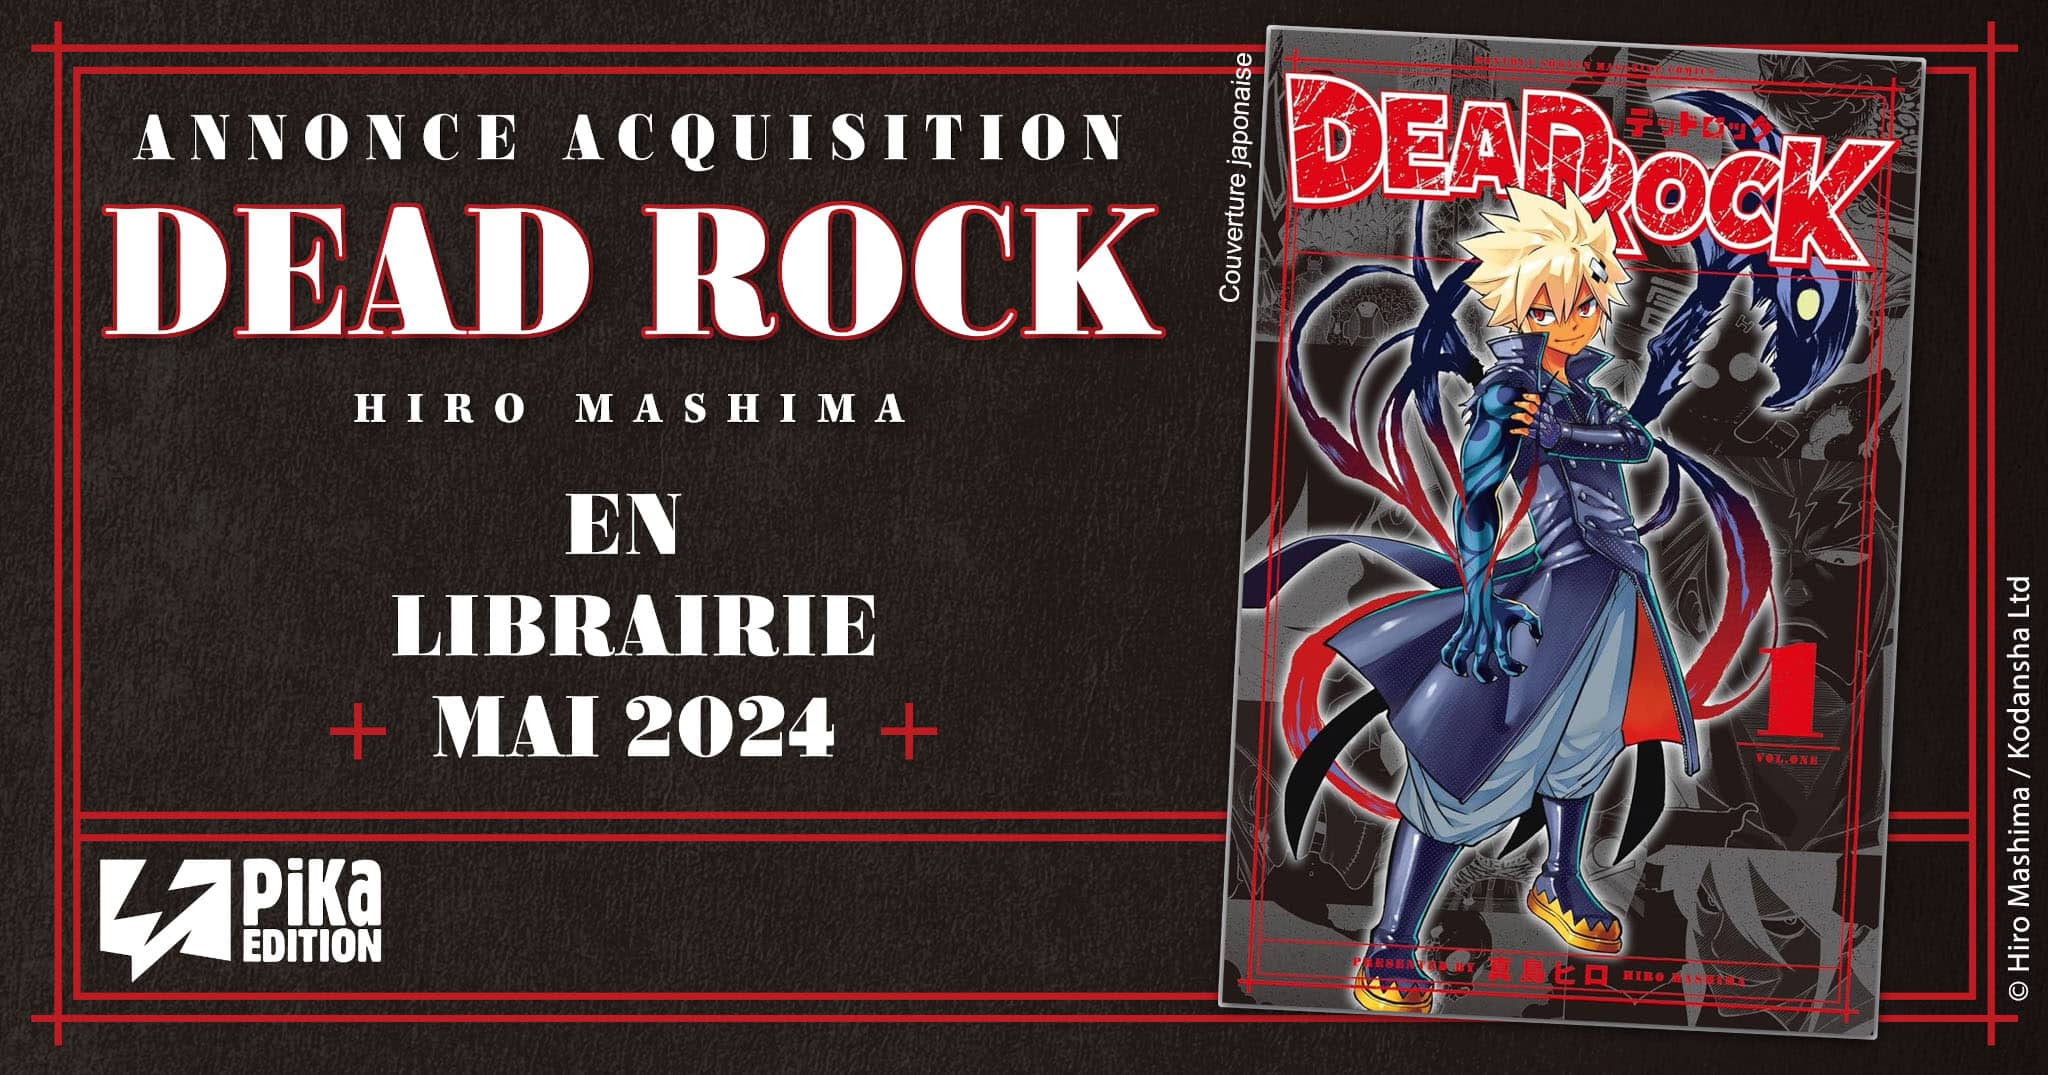 Annonce de la date de sortie en France du manga Dead Rock de Hiro Mashima aux éditions Pika